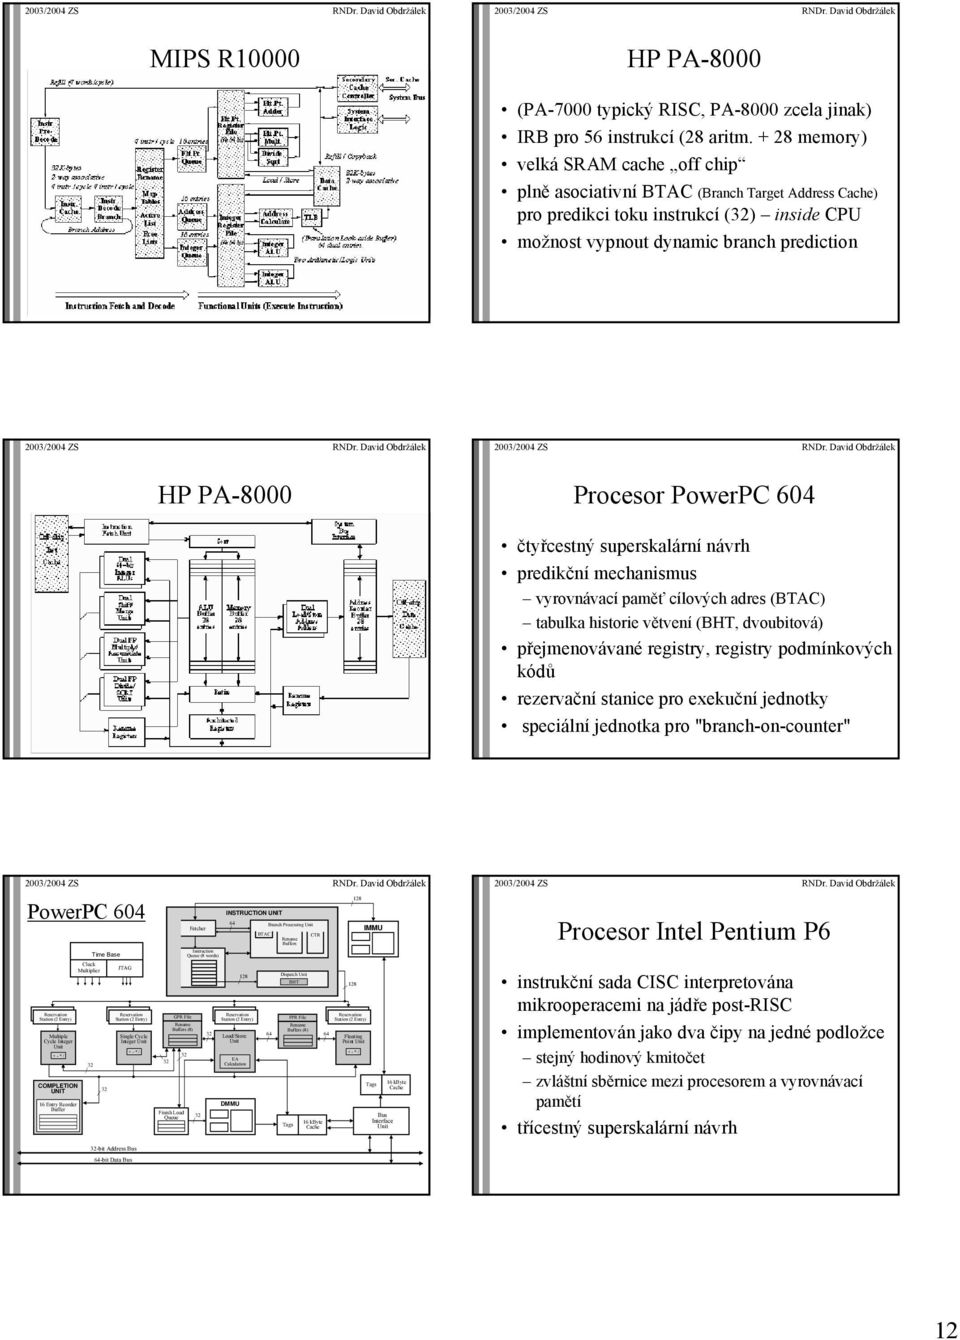 PowerPC 604 čtyřcestný superskalární návrh predikční mechanismus vyrovnávací paměť cílových adres (BTAC) tabulka historie větvení (BHT, dvoubitová) přejmenovávané registry, registry podmínkových kódů